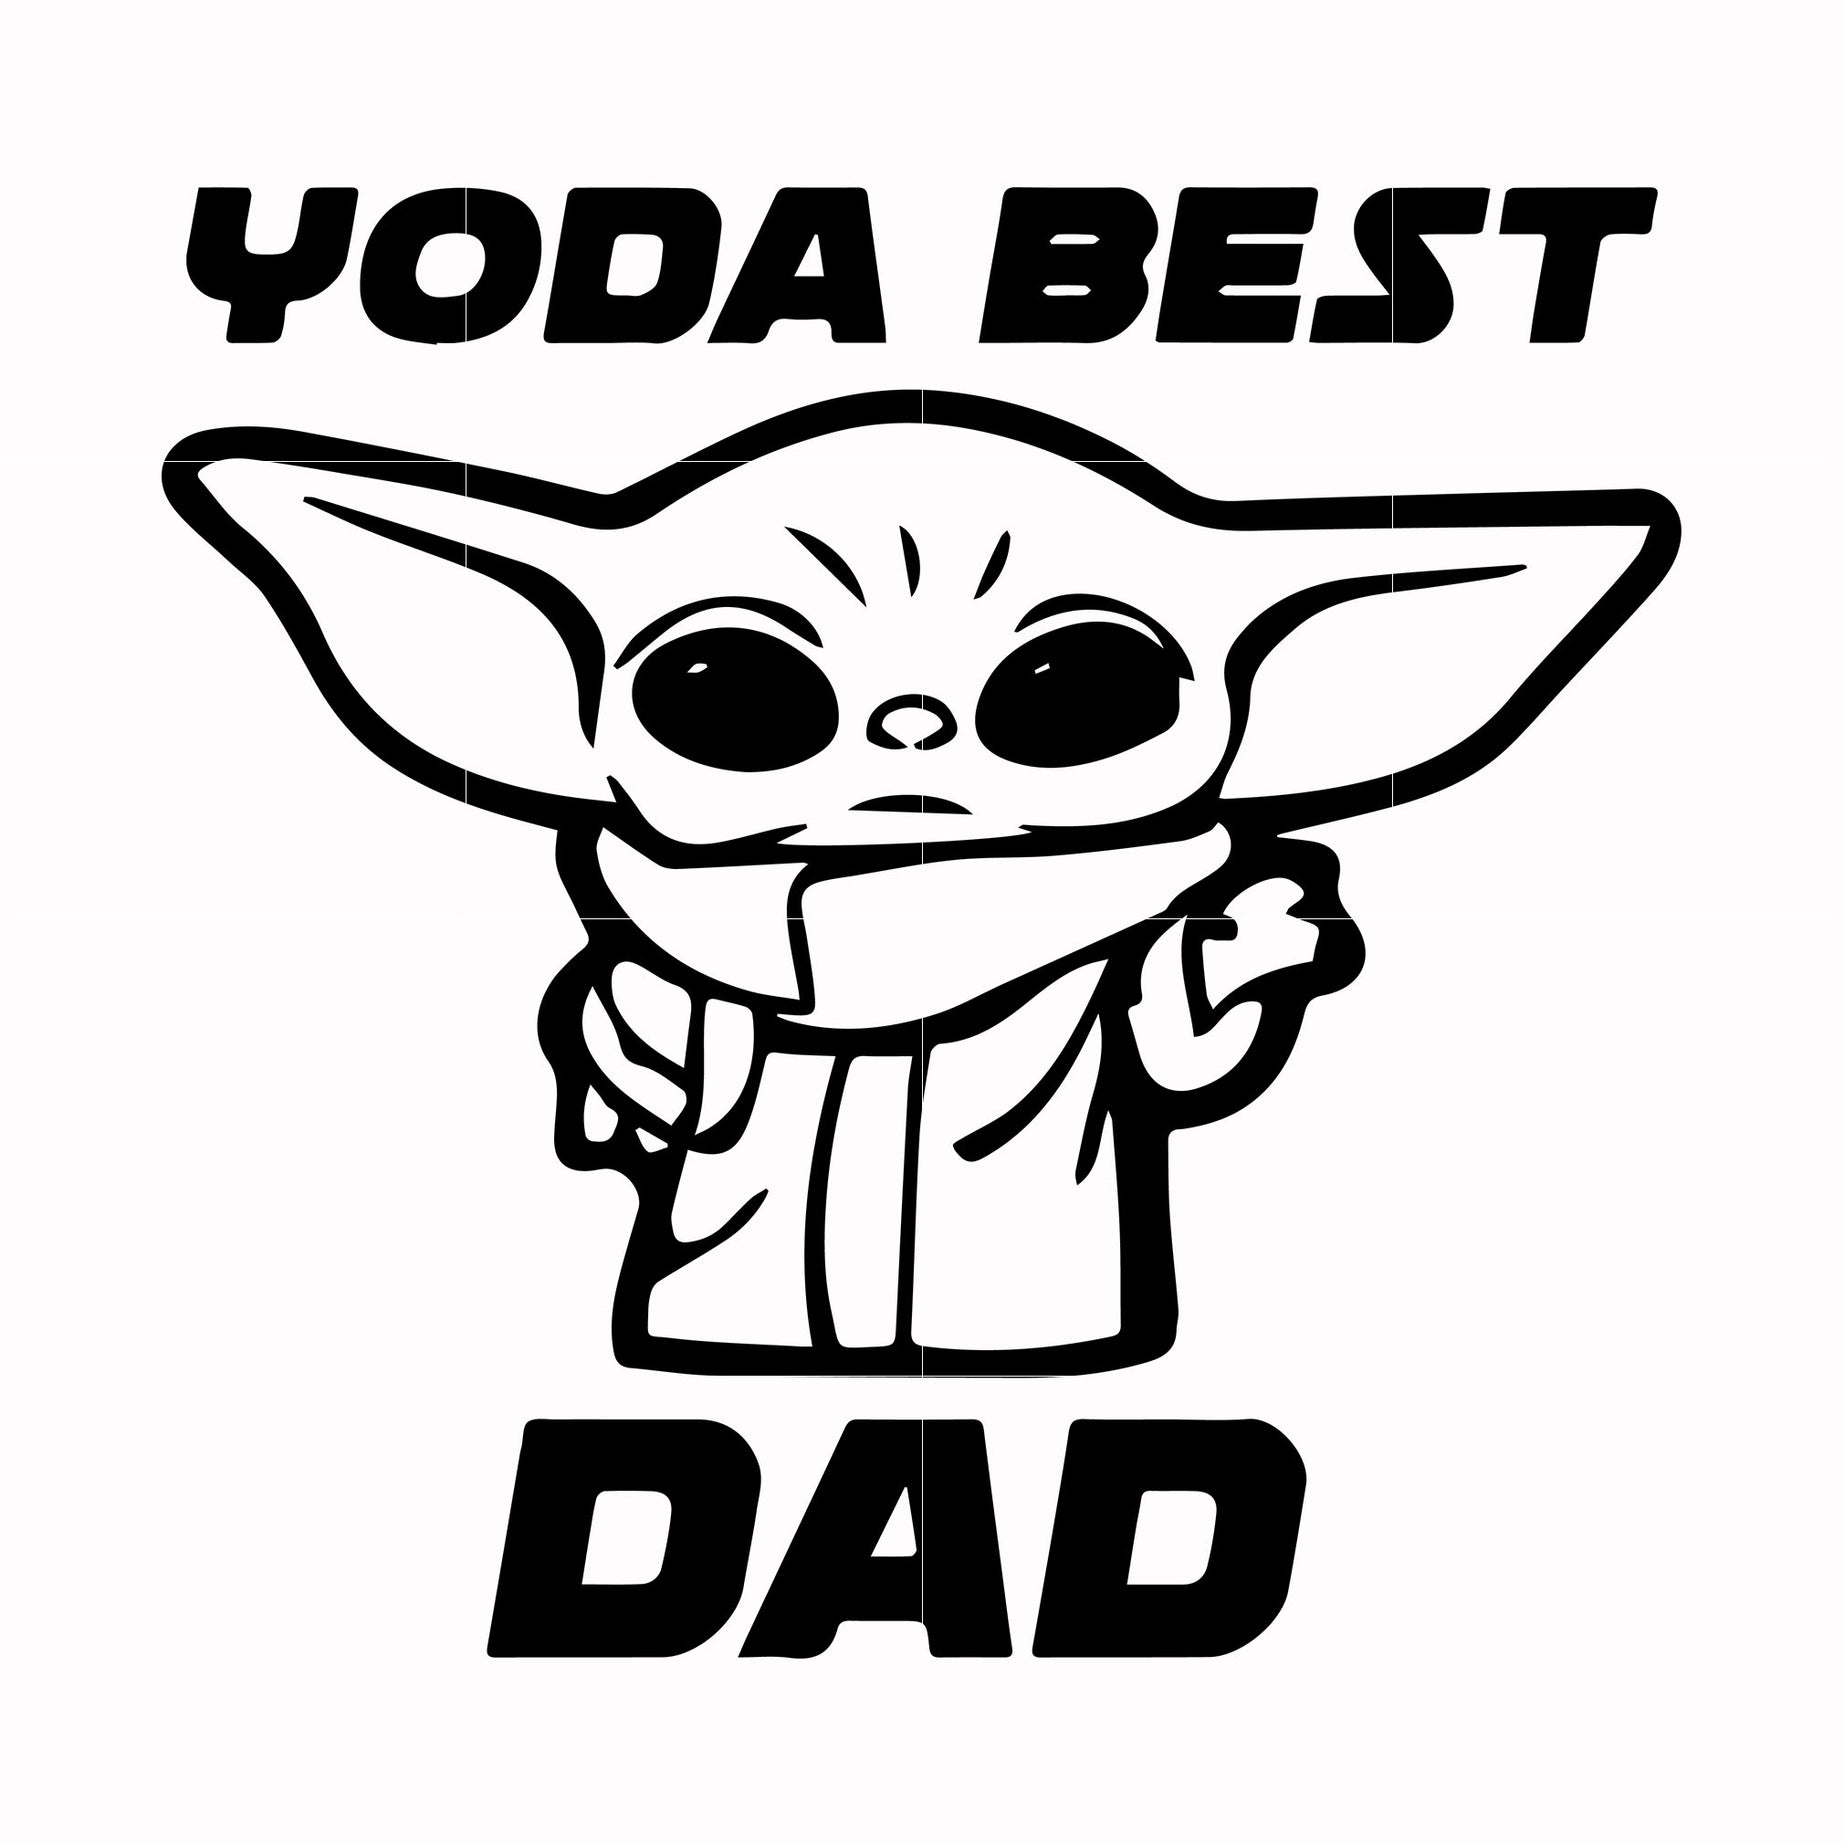 Yoda best dad svg, png, dxf, eps, digital file FTD77